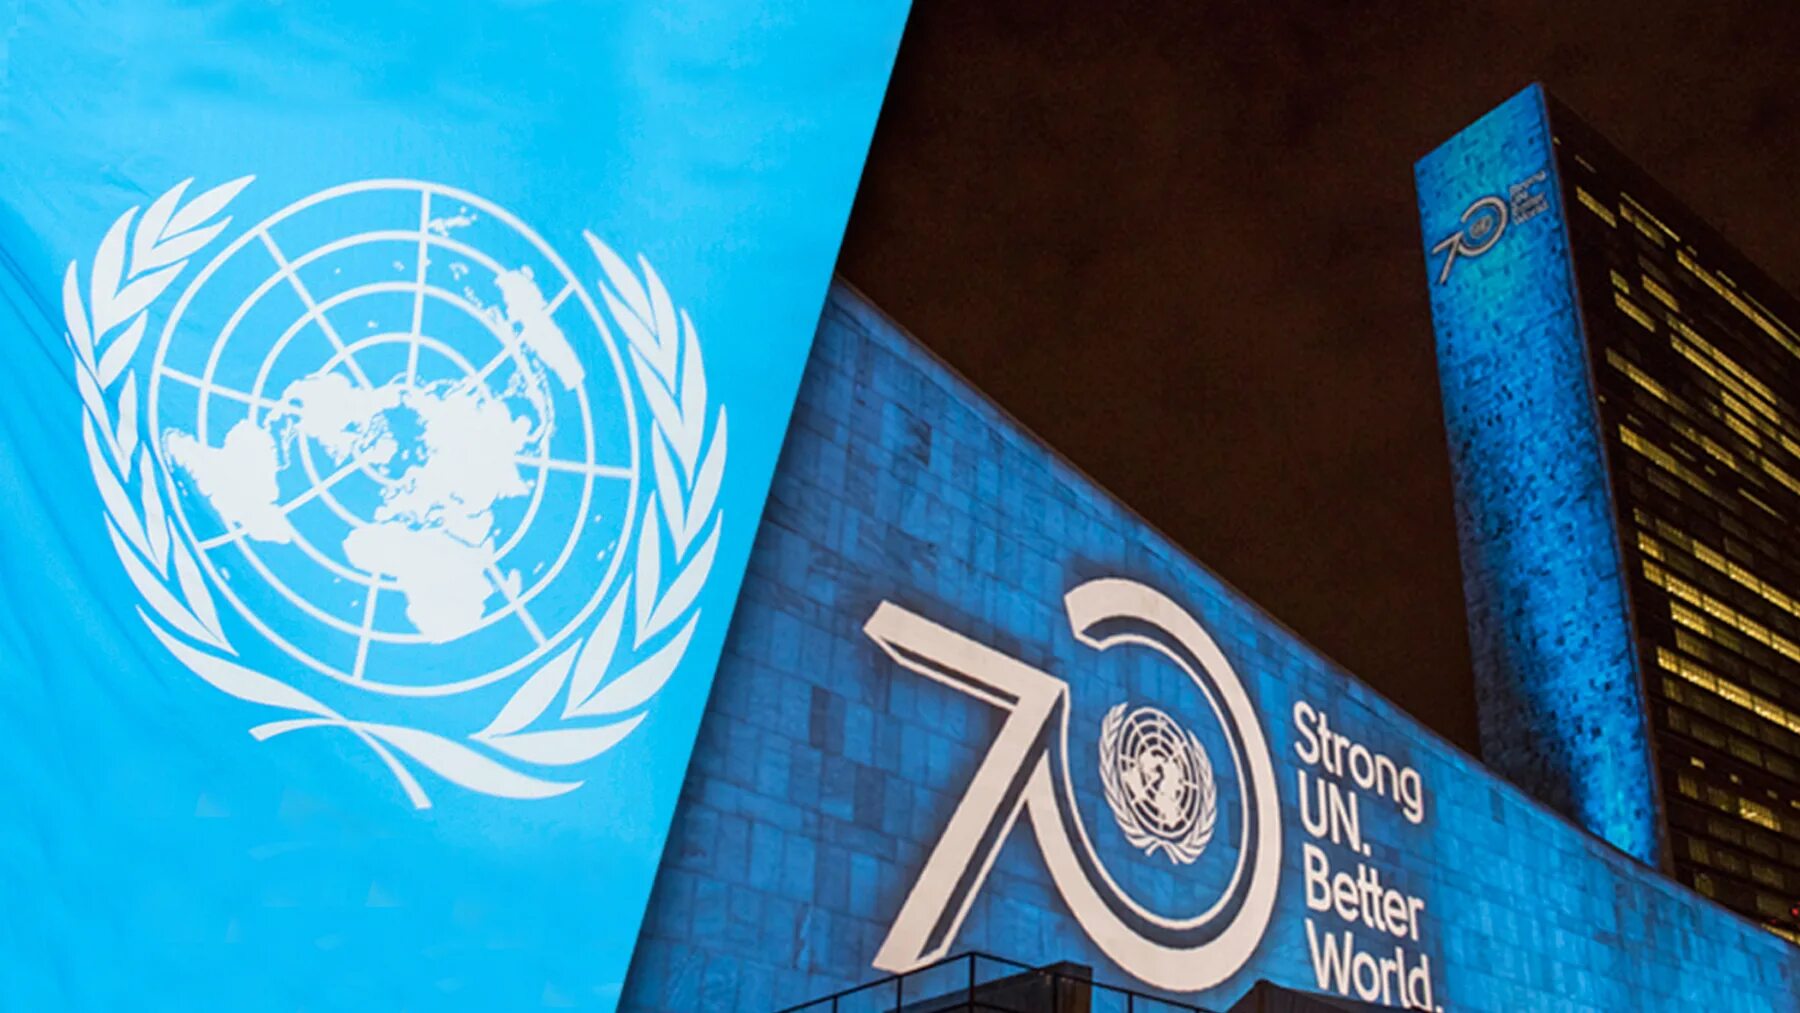 70 оон. ООН. Альтернативный флаг ООН. Флаг ЮНИСЕФ ООН. ООН Минимализм.